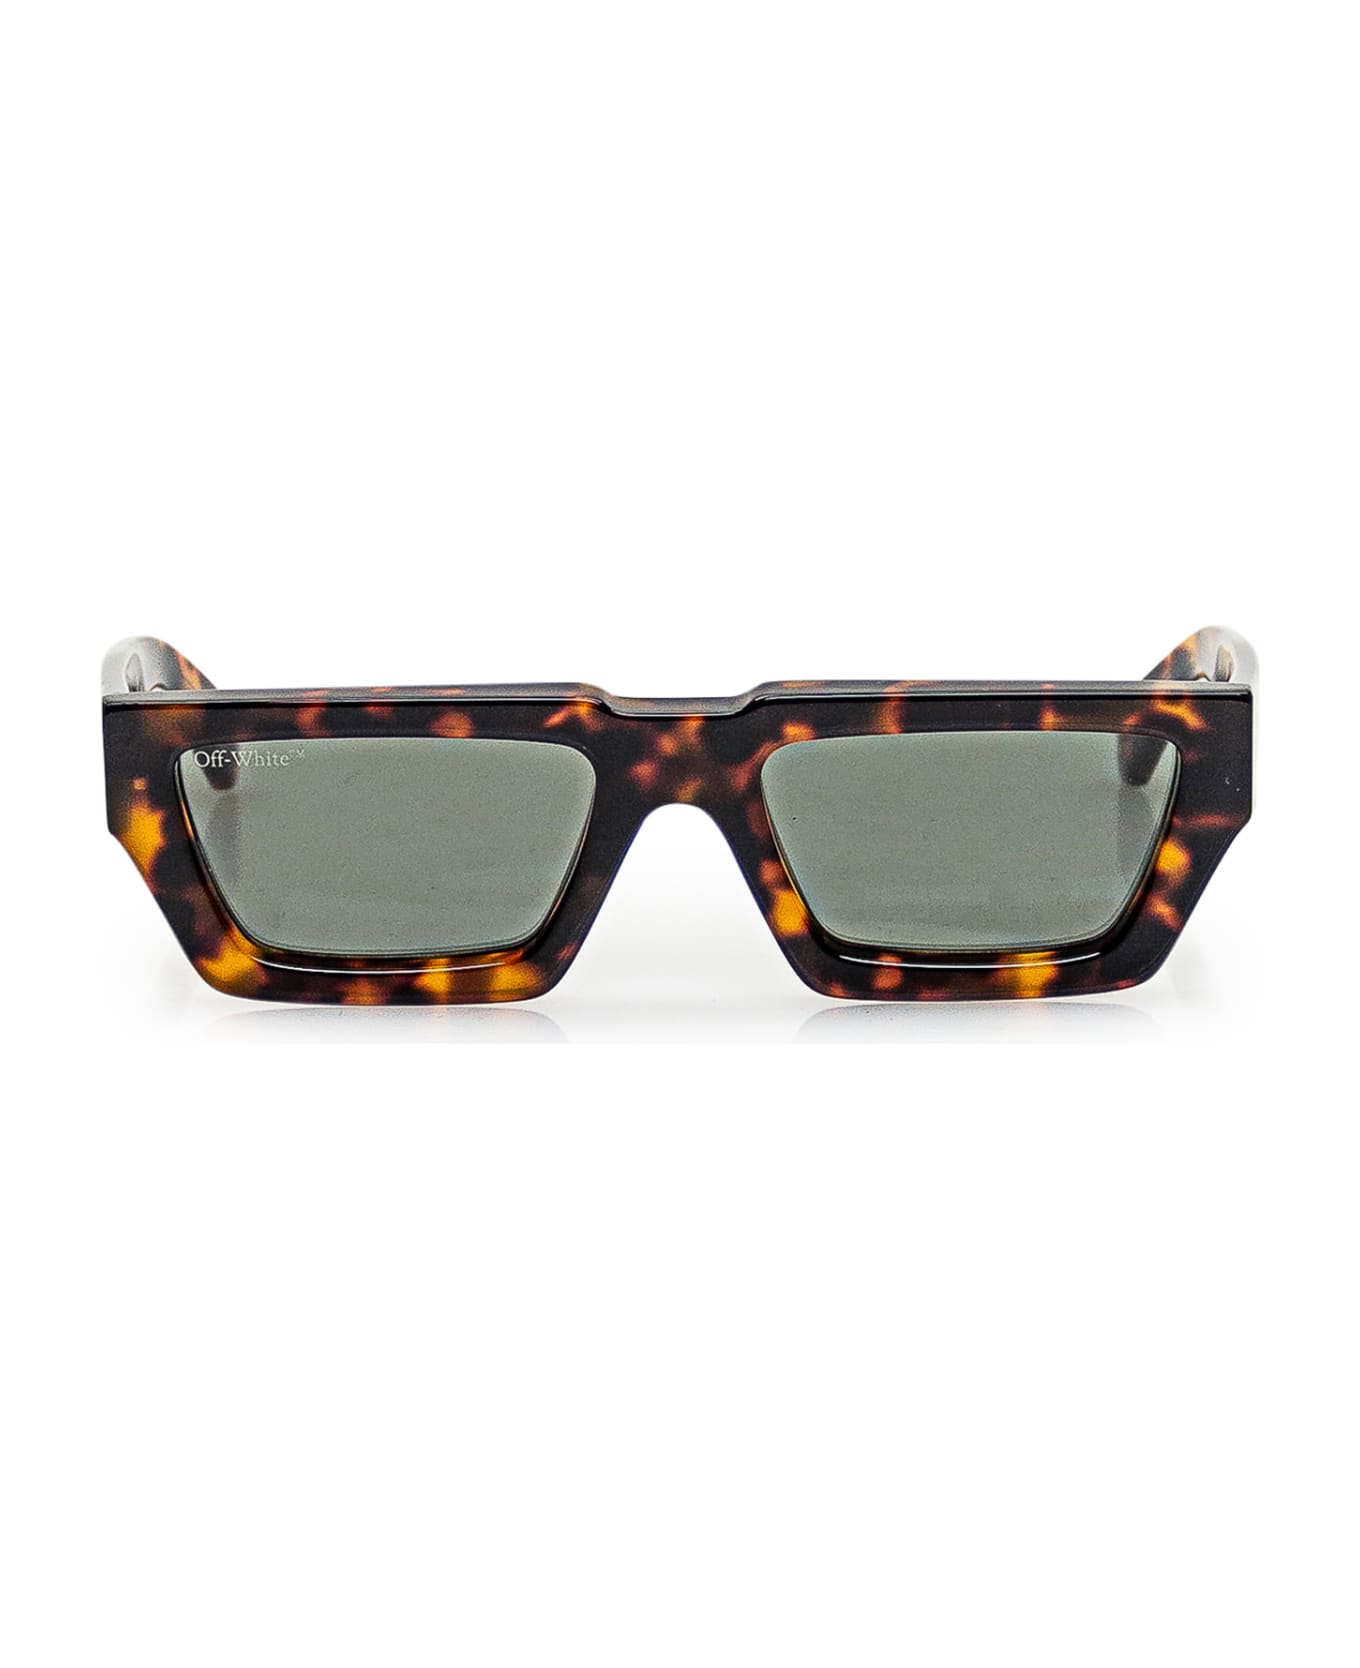 Off-White Manchester Rectangle Frame Sunglasses - 6055 HAVANA